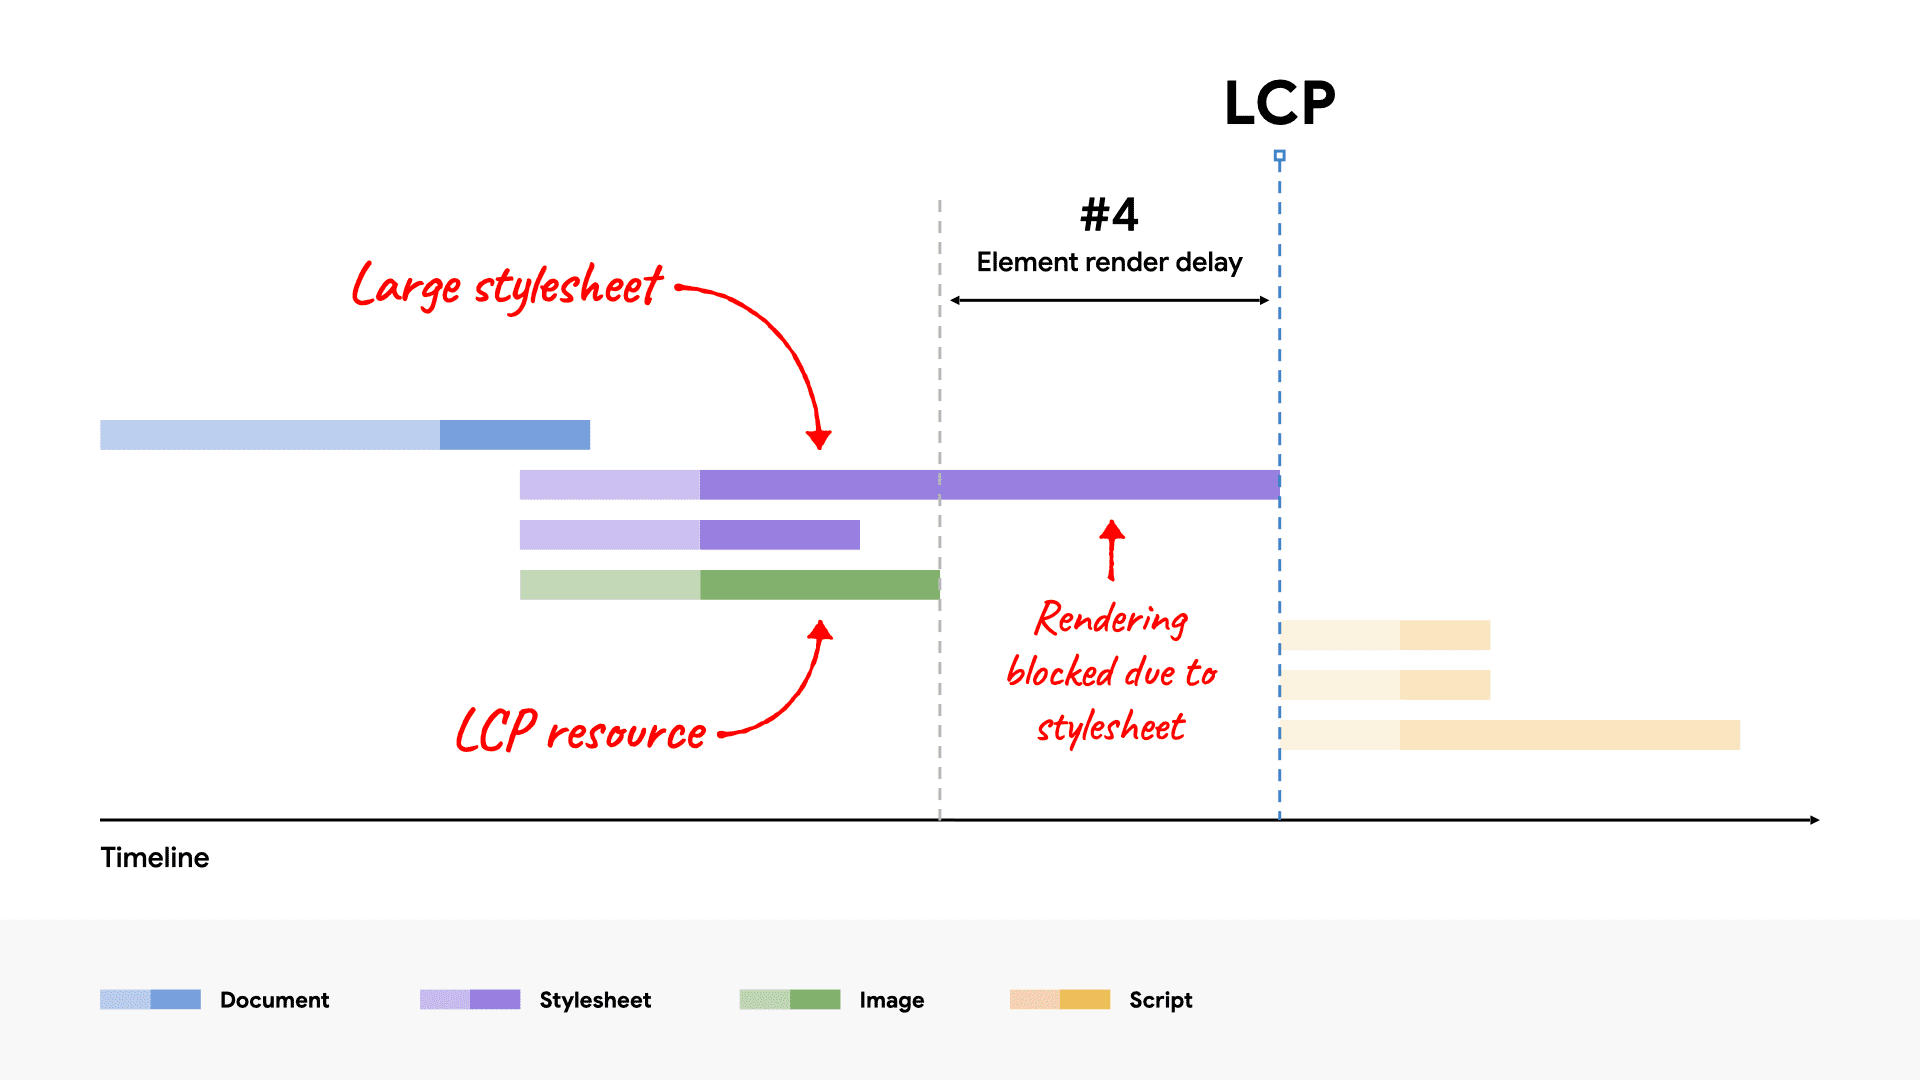 Sơ đồ dạng thác nước trên mạng cho thấy một tệp CSS lớn chặn kết xuất phần tử LCP vì phần tử này mất nhiều thời gian tải hơn so với tài nguyên LCP